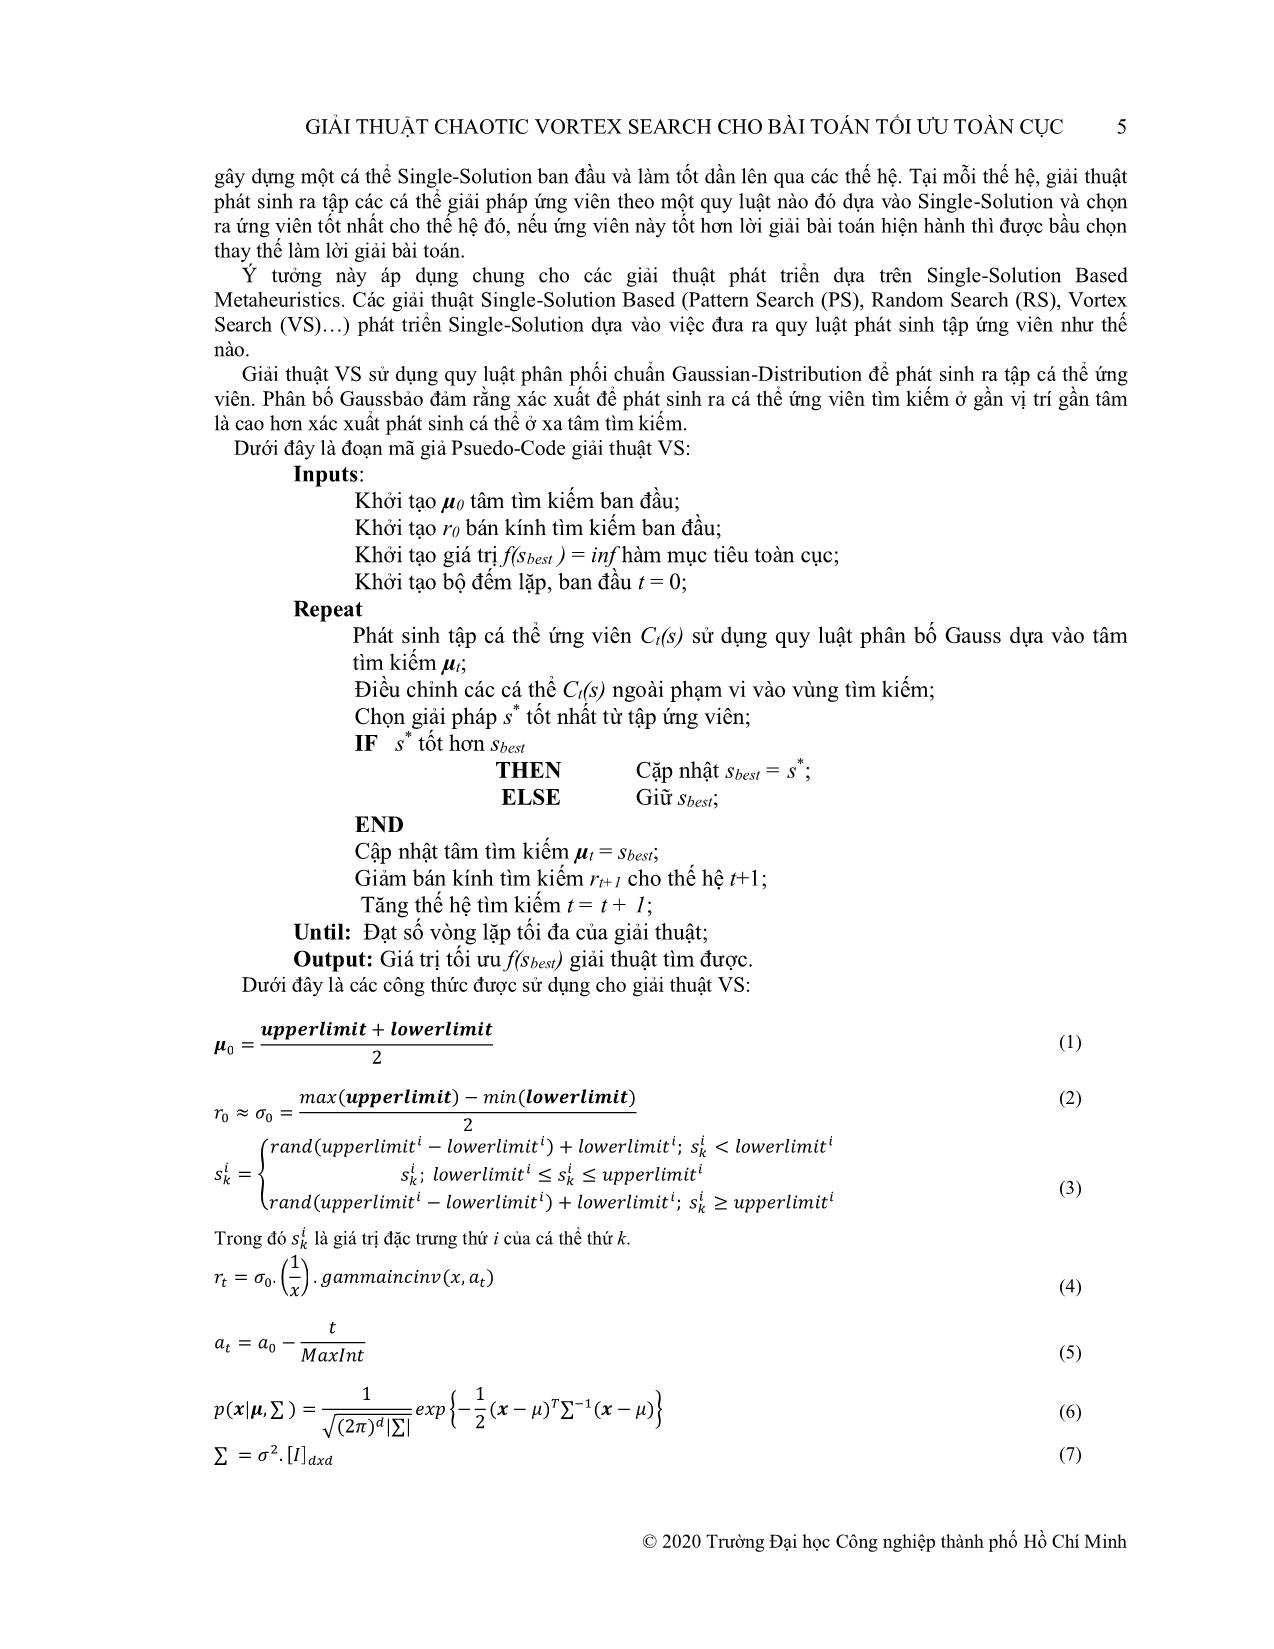 Giải thuật Chaotic Vortex Search cho bài toán tối ưu toàn cục trang 3